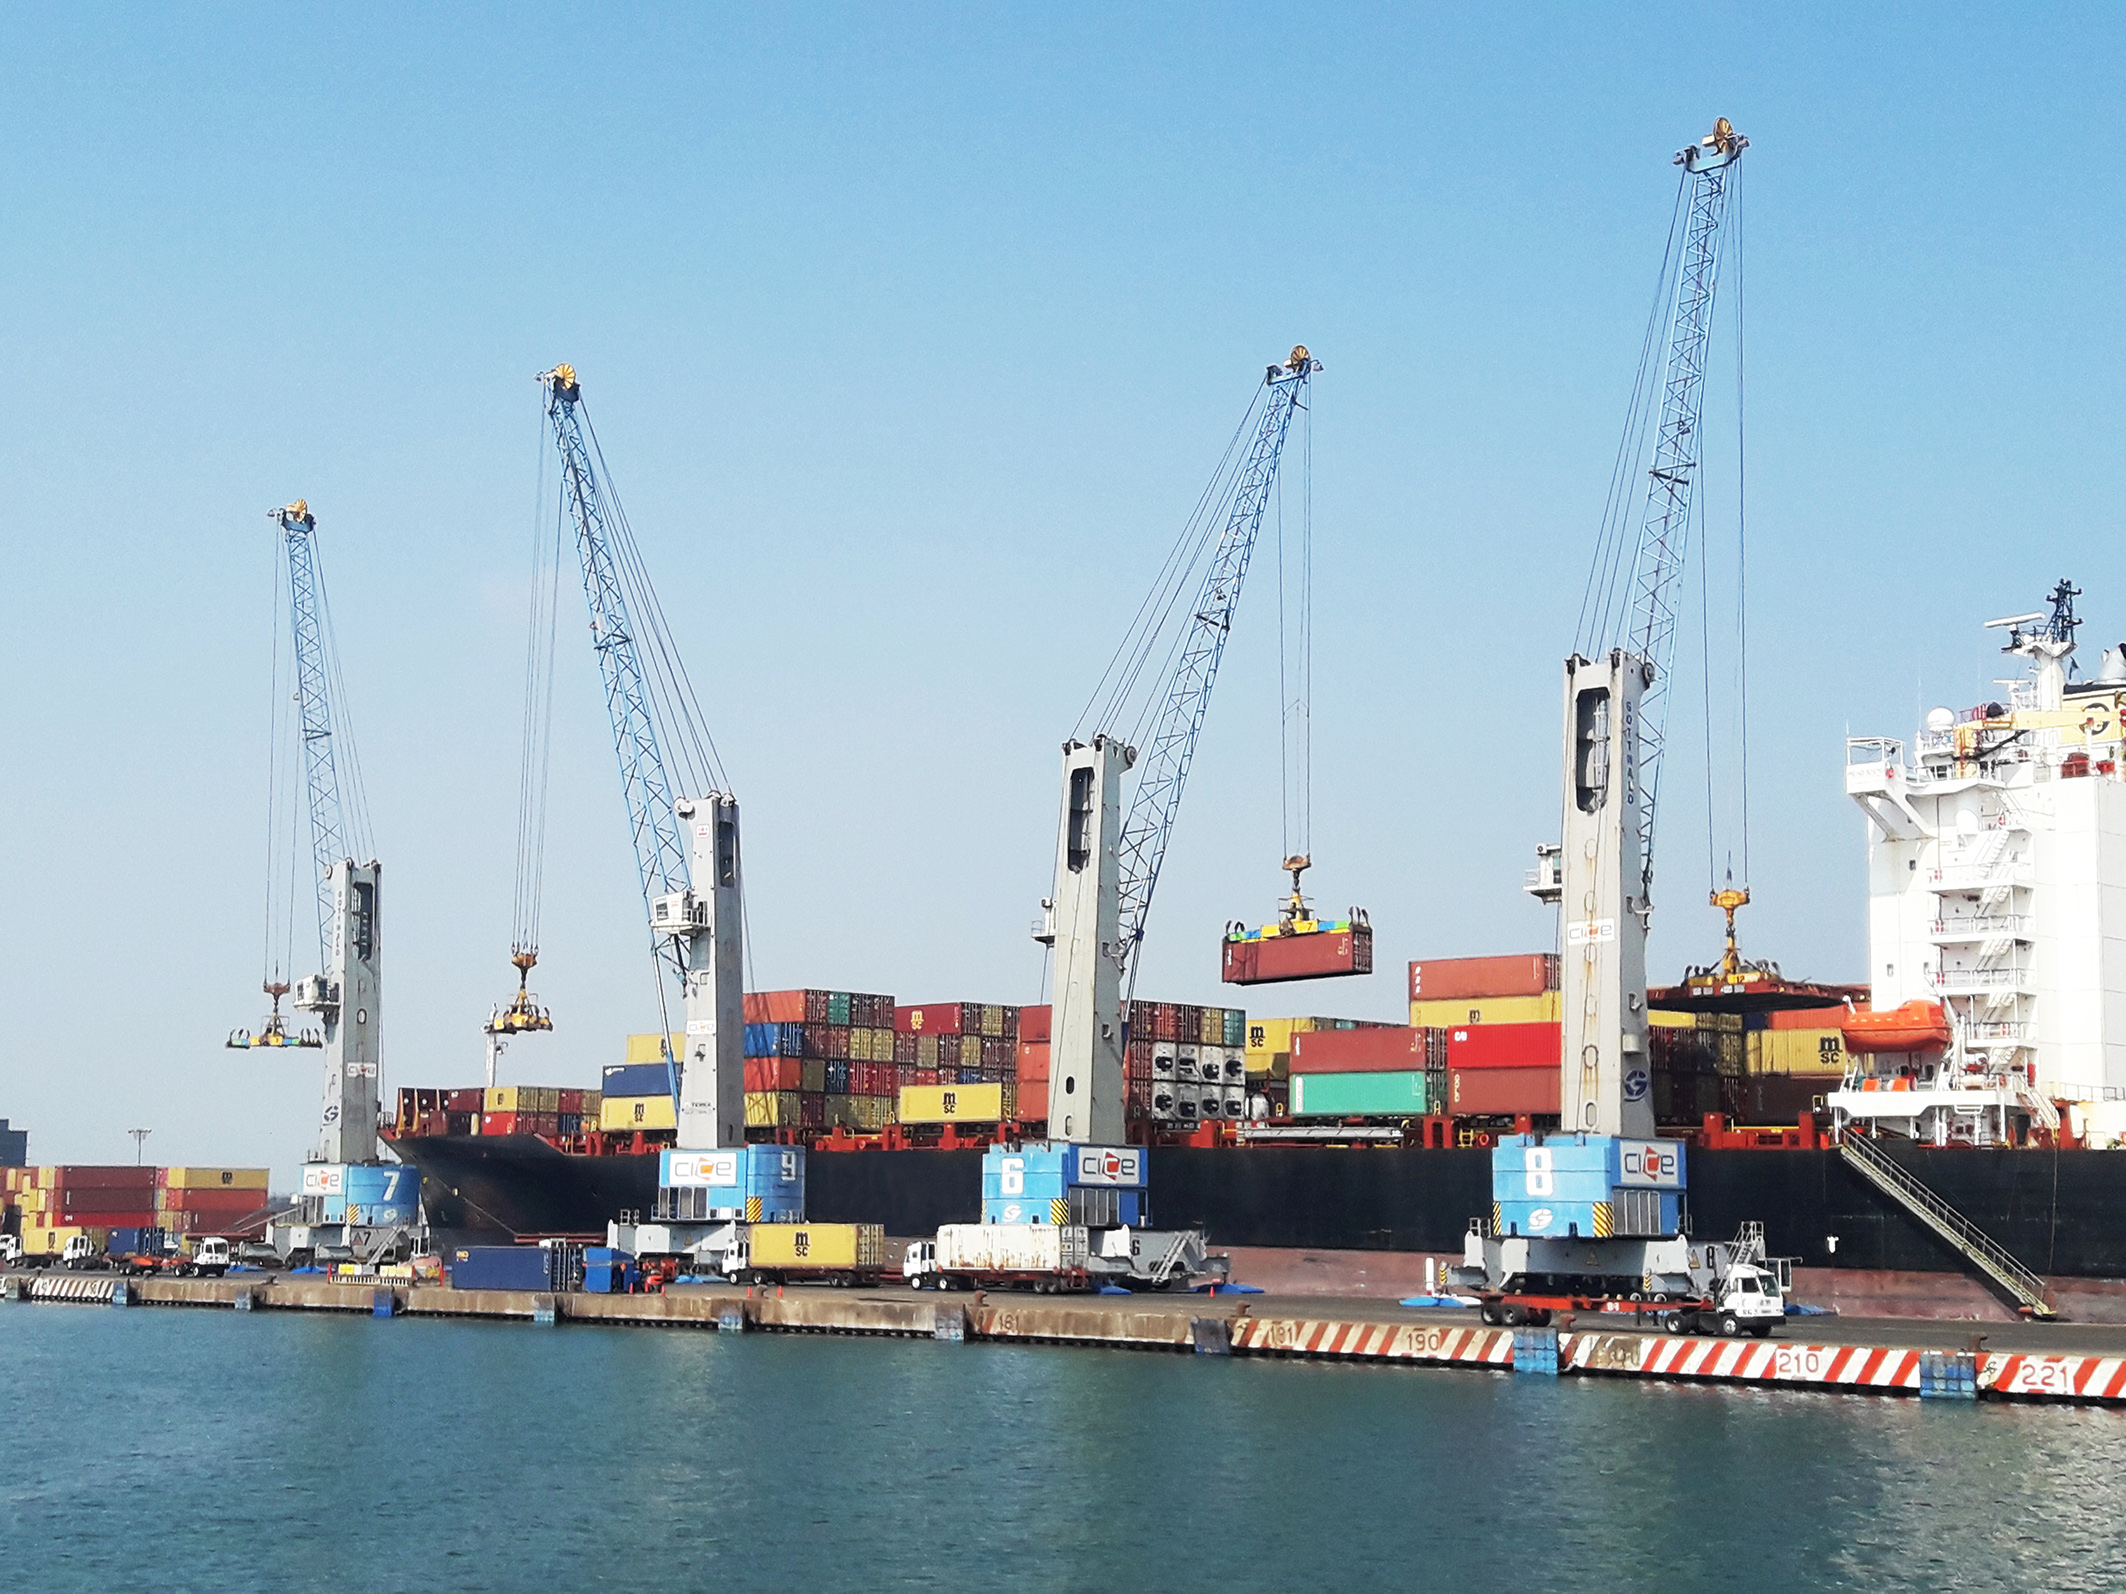 Existing fleet of Konecranes Gottwald Mobile Harbor Cranes in the Port of Veracruz